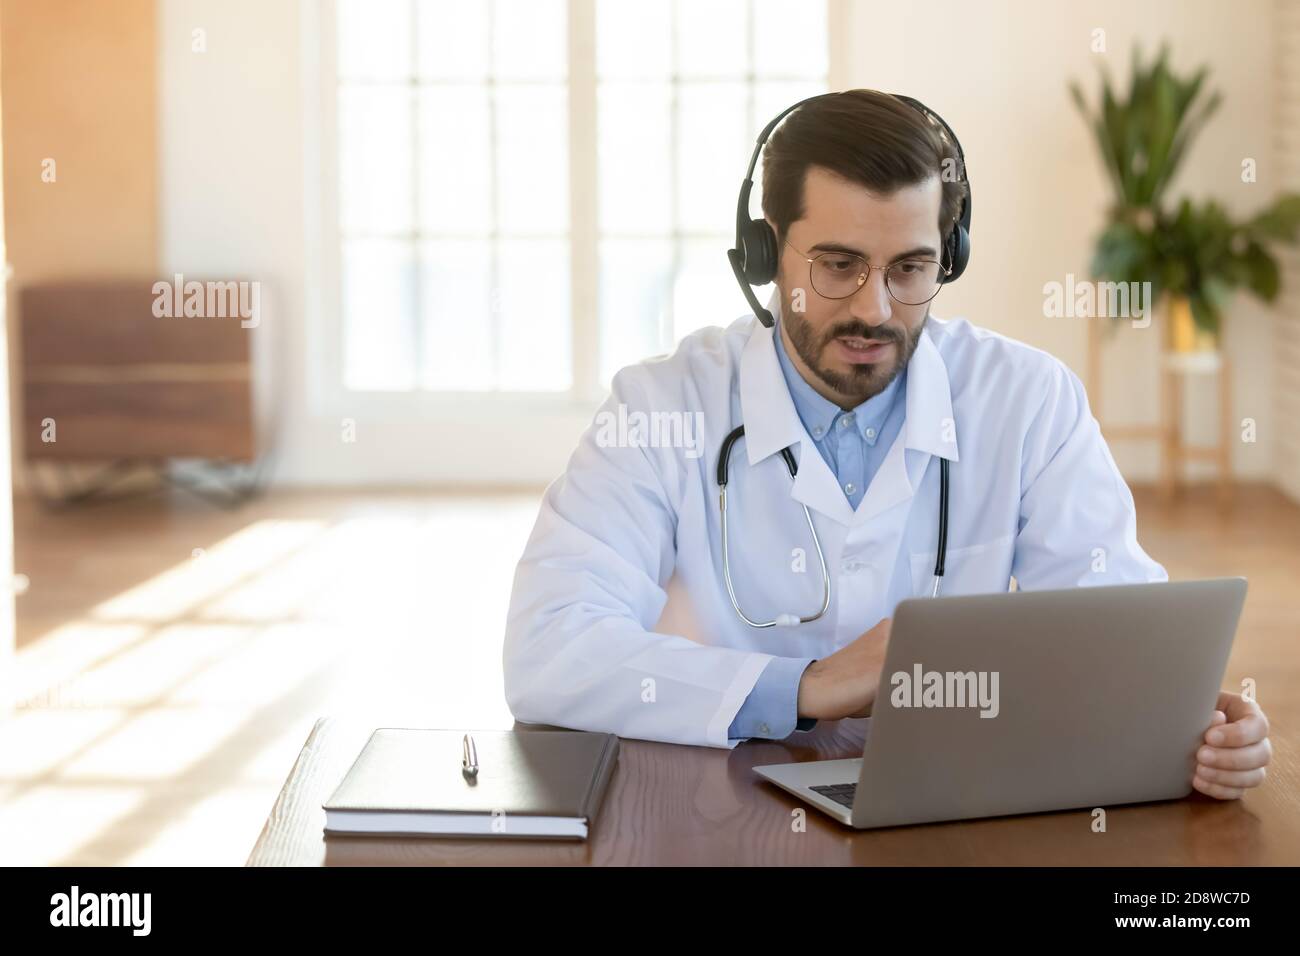 Jeune médecin consultant attentif concentré assis à l'ordinateur portable dans le micro-casque Banque D'Images